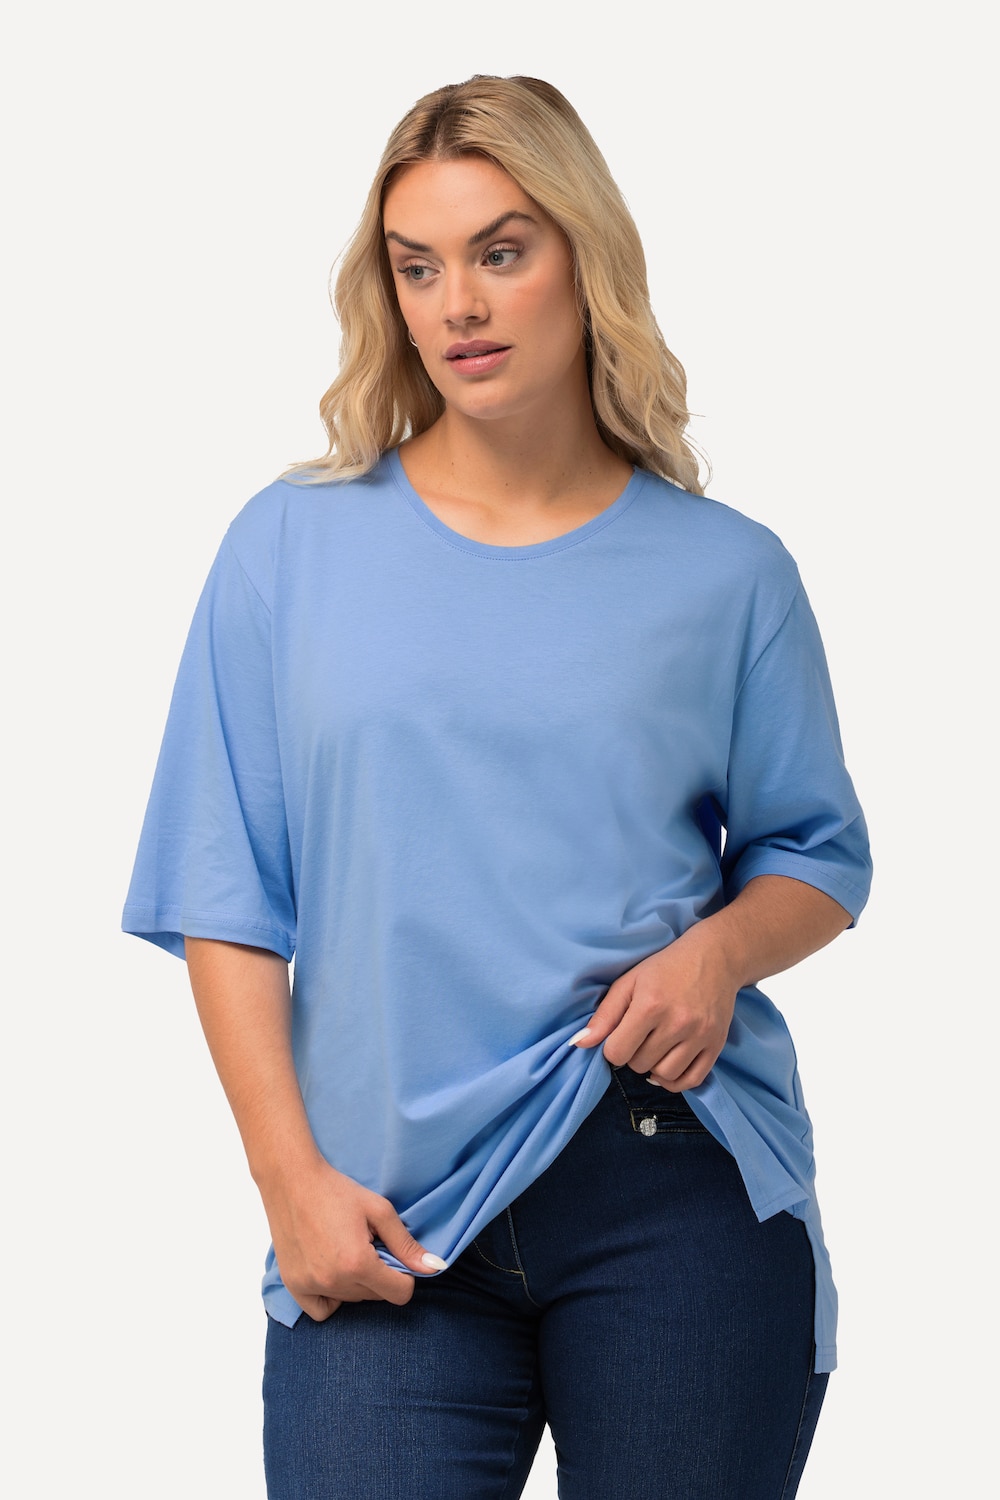 Grote Maten T-shirt, Dames, blauw, Maat: 54/56, Katoen, Ulla Popken